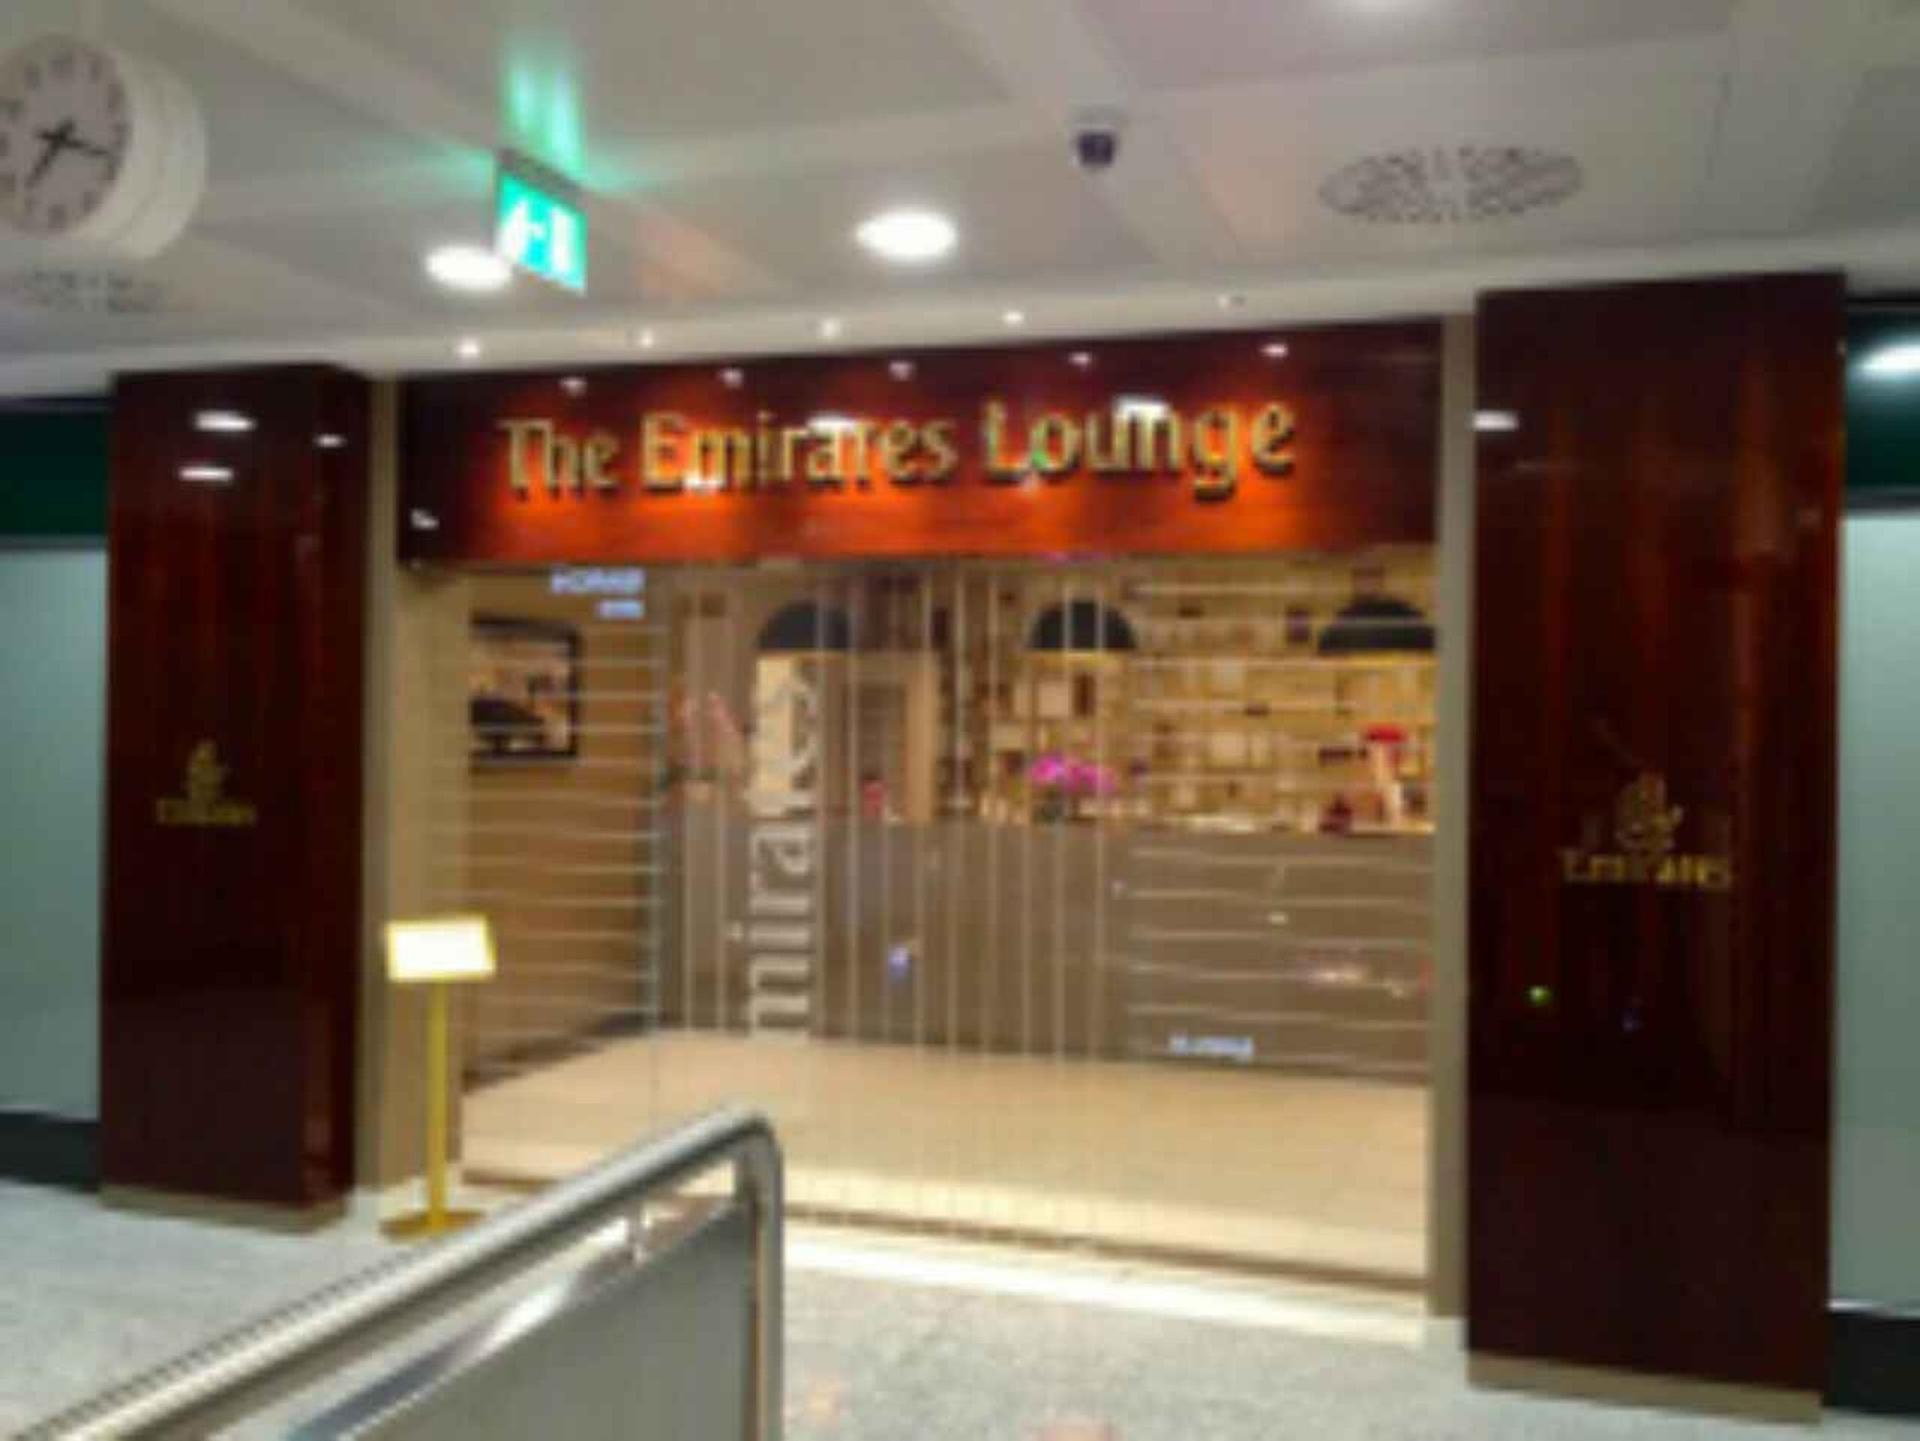 The Emirates Lounge image 3 of 13